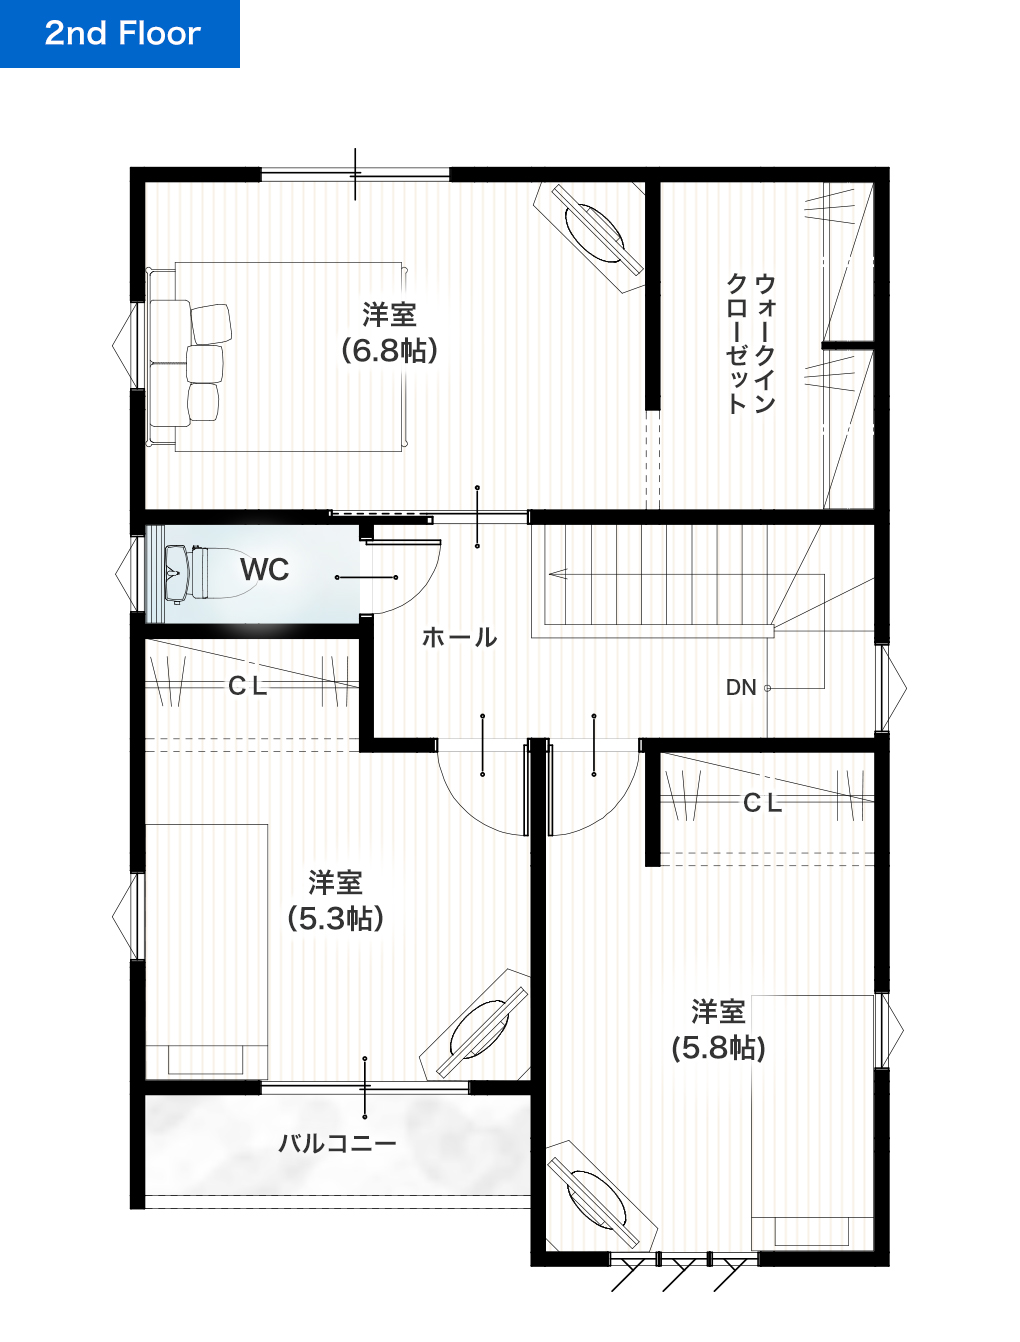 熊本市中央区国府本町2期1号地 28坪 4LDK 建売・一戸建ての新築物件 2階間取り図